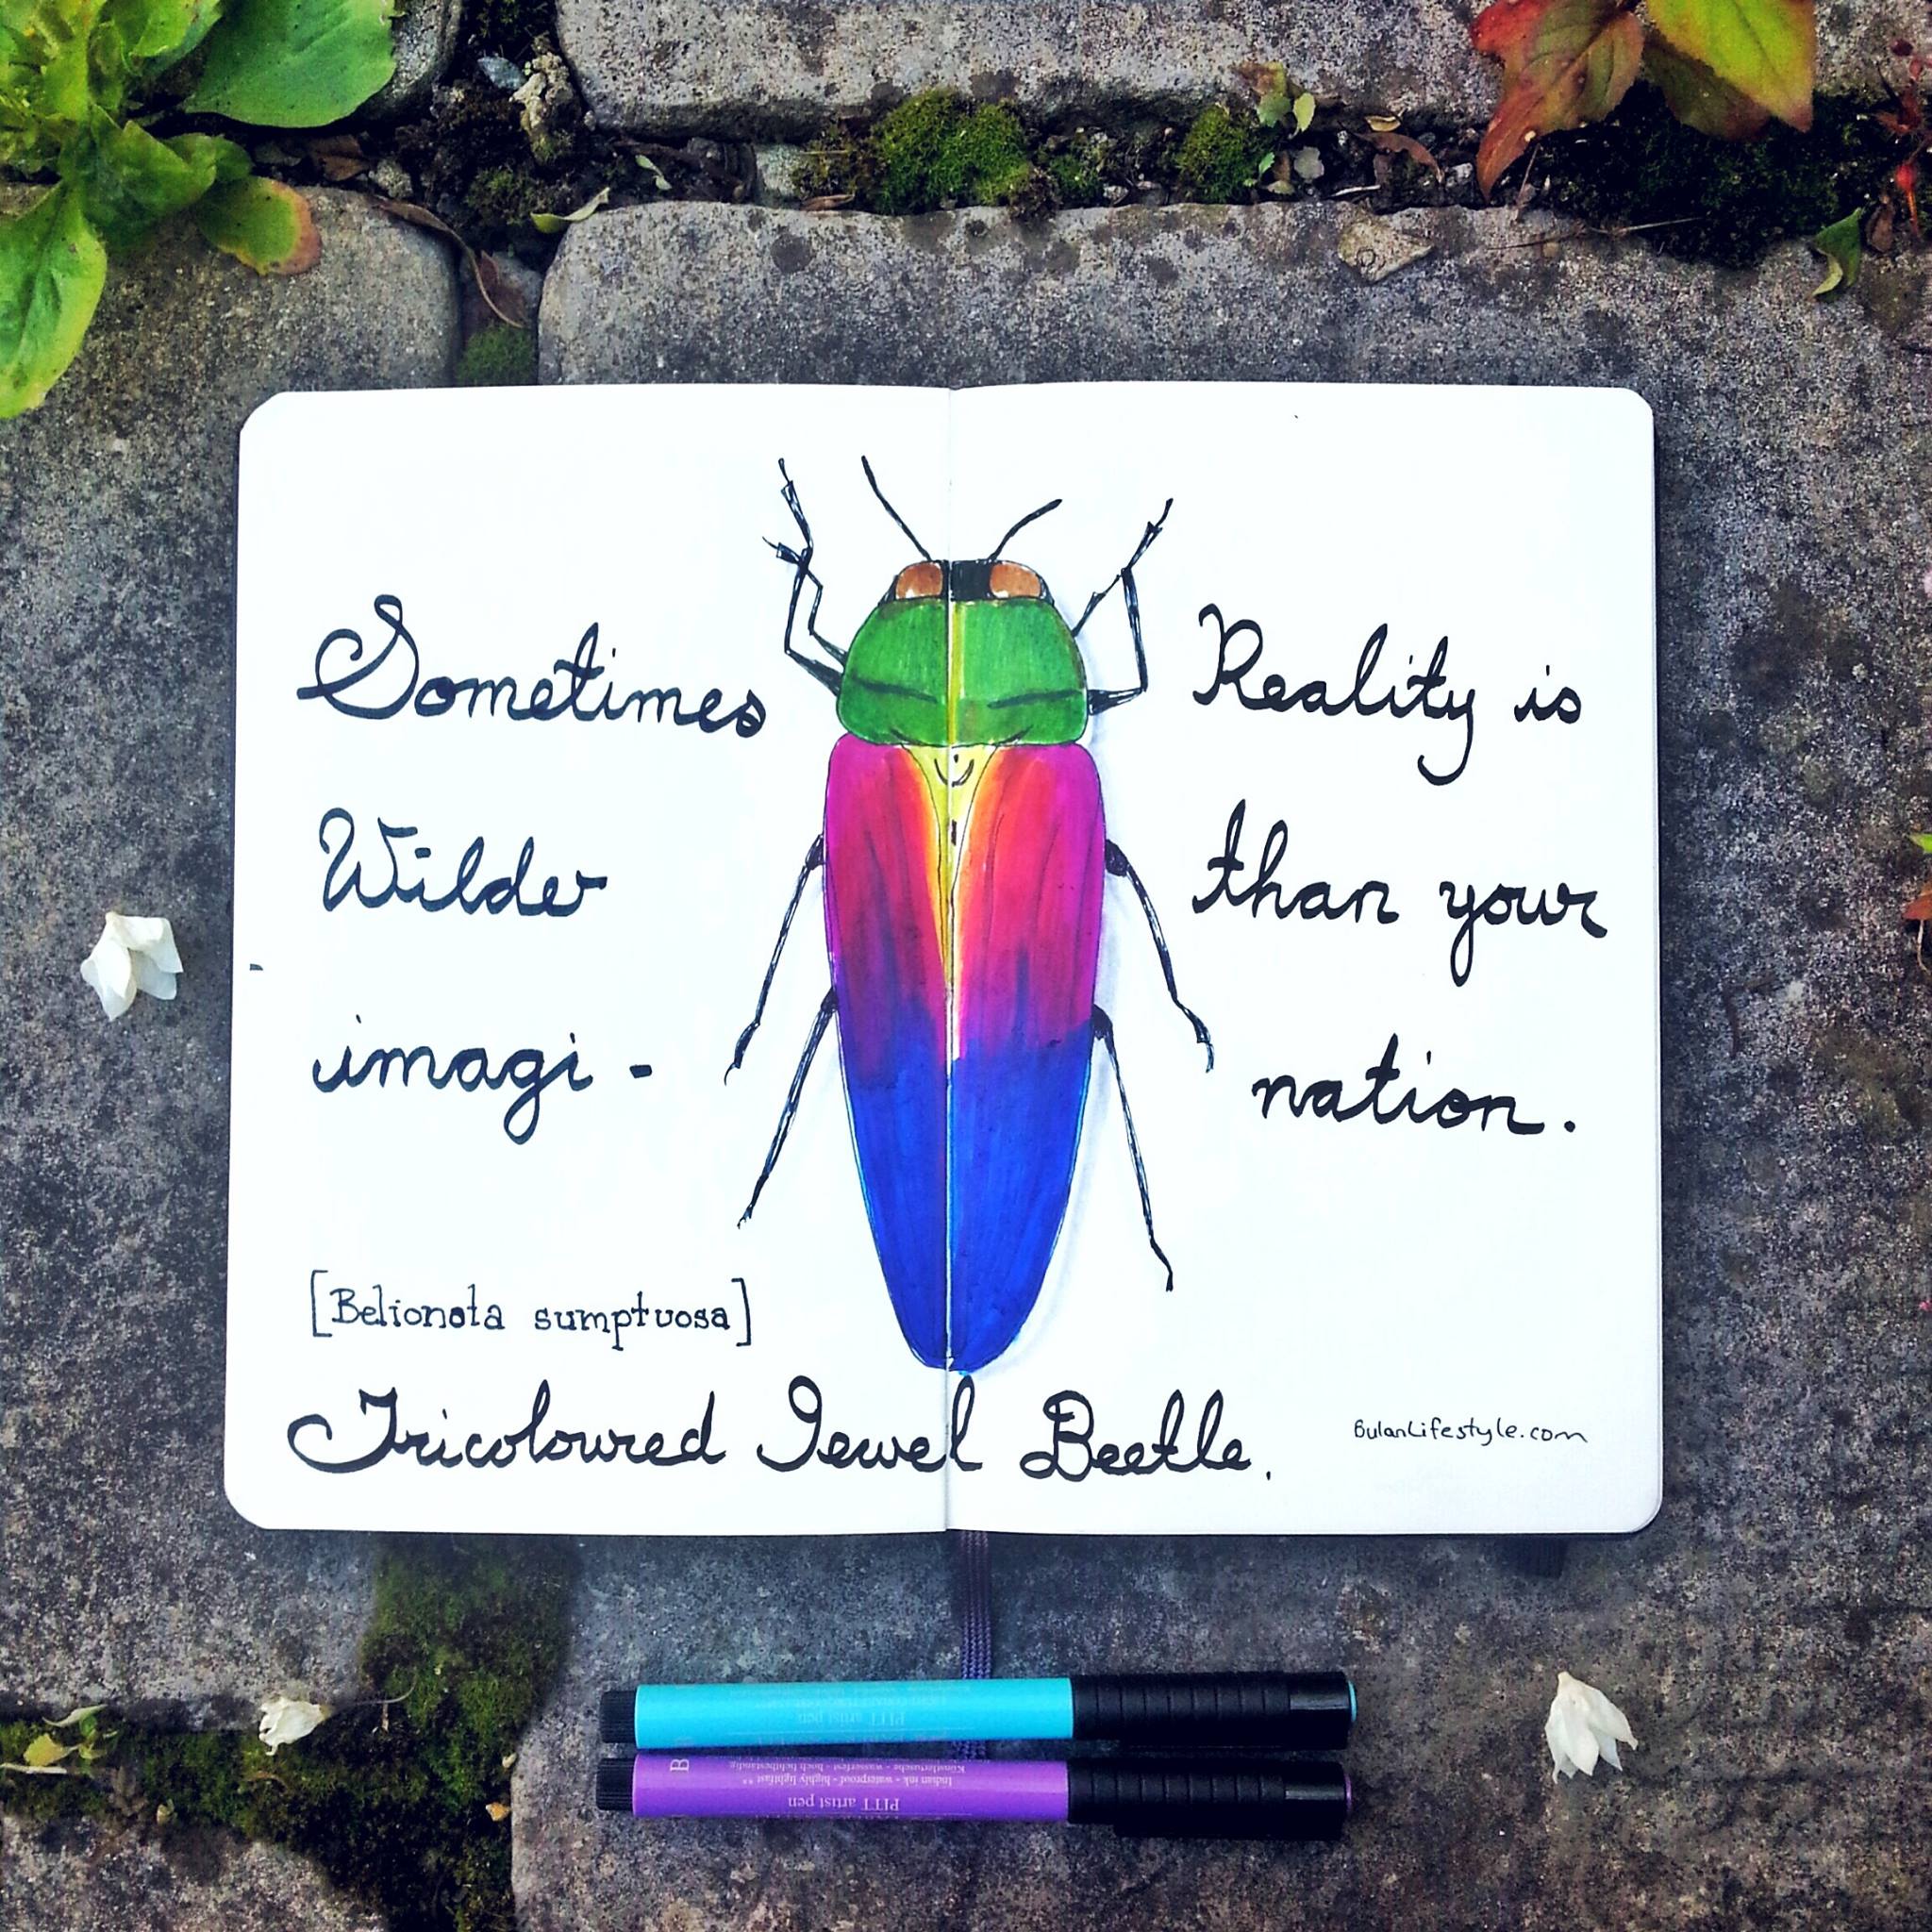 Tricoloured jewel beetle.